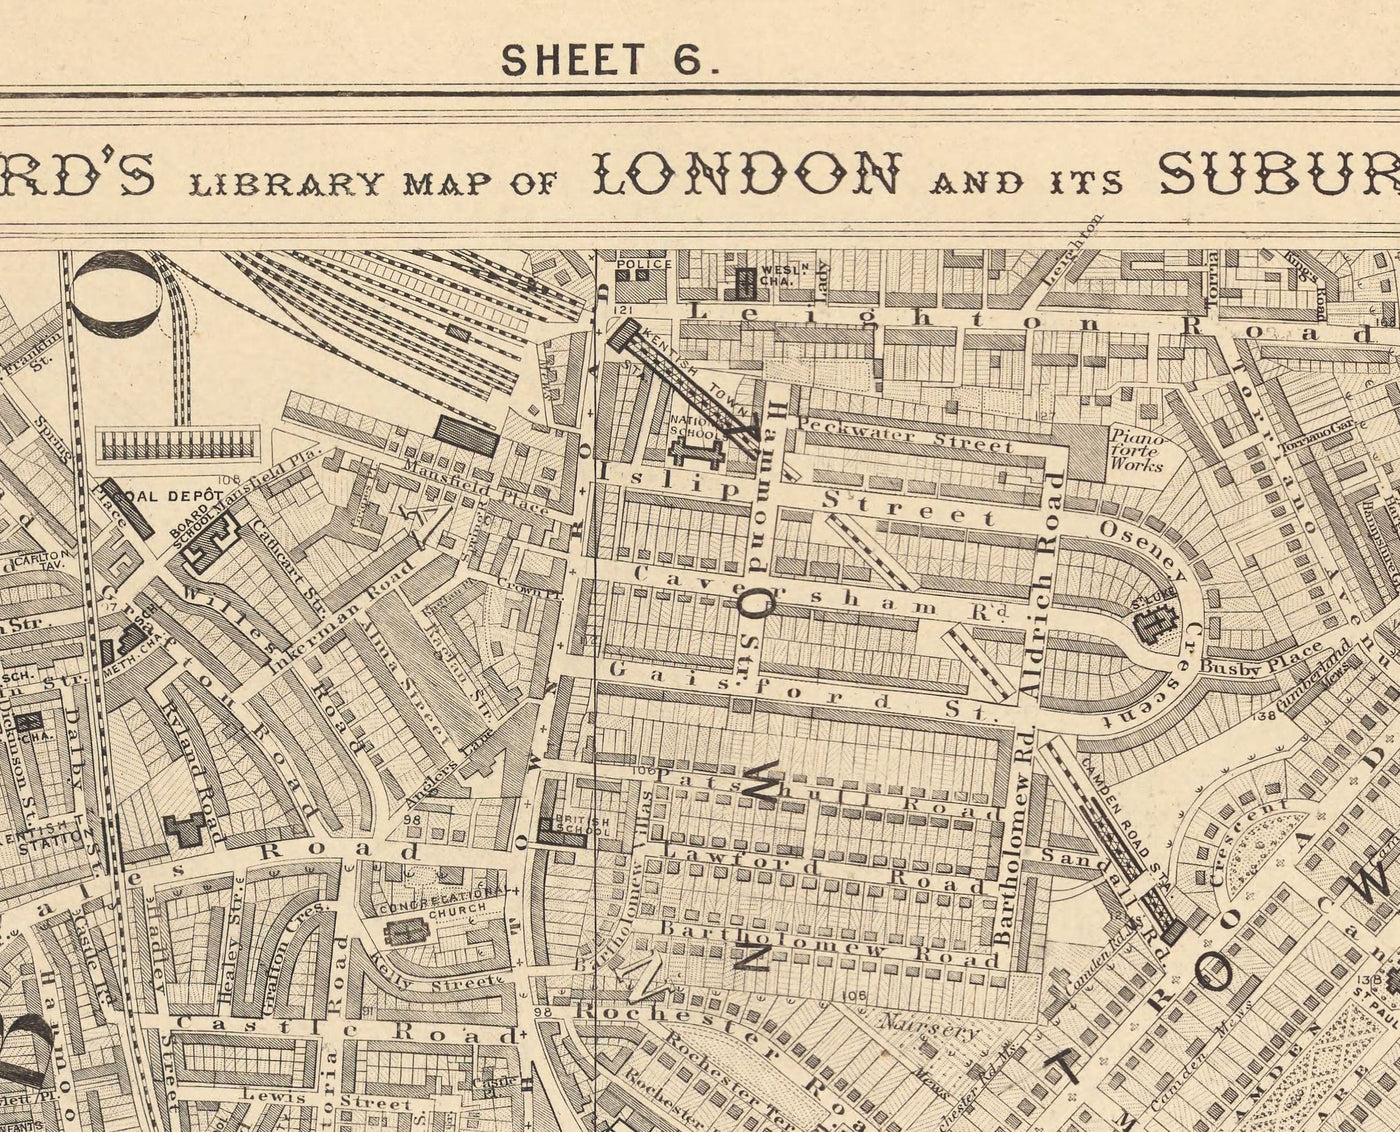 Alte Karte von North London 1862 von Edward Stanford - Camden, Regents Park, Kentish Town, Kings Cross - NW1, N1C, N7, NW5, NW3, NW8